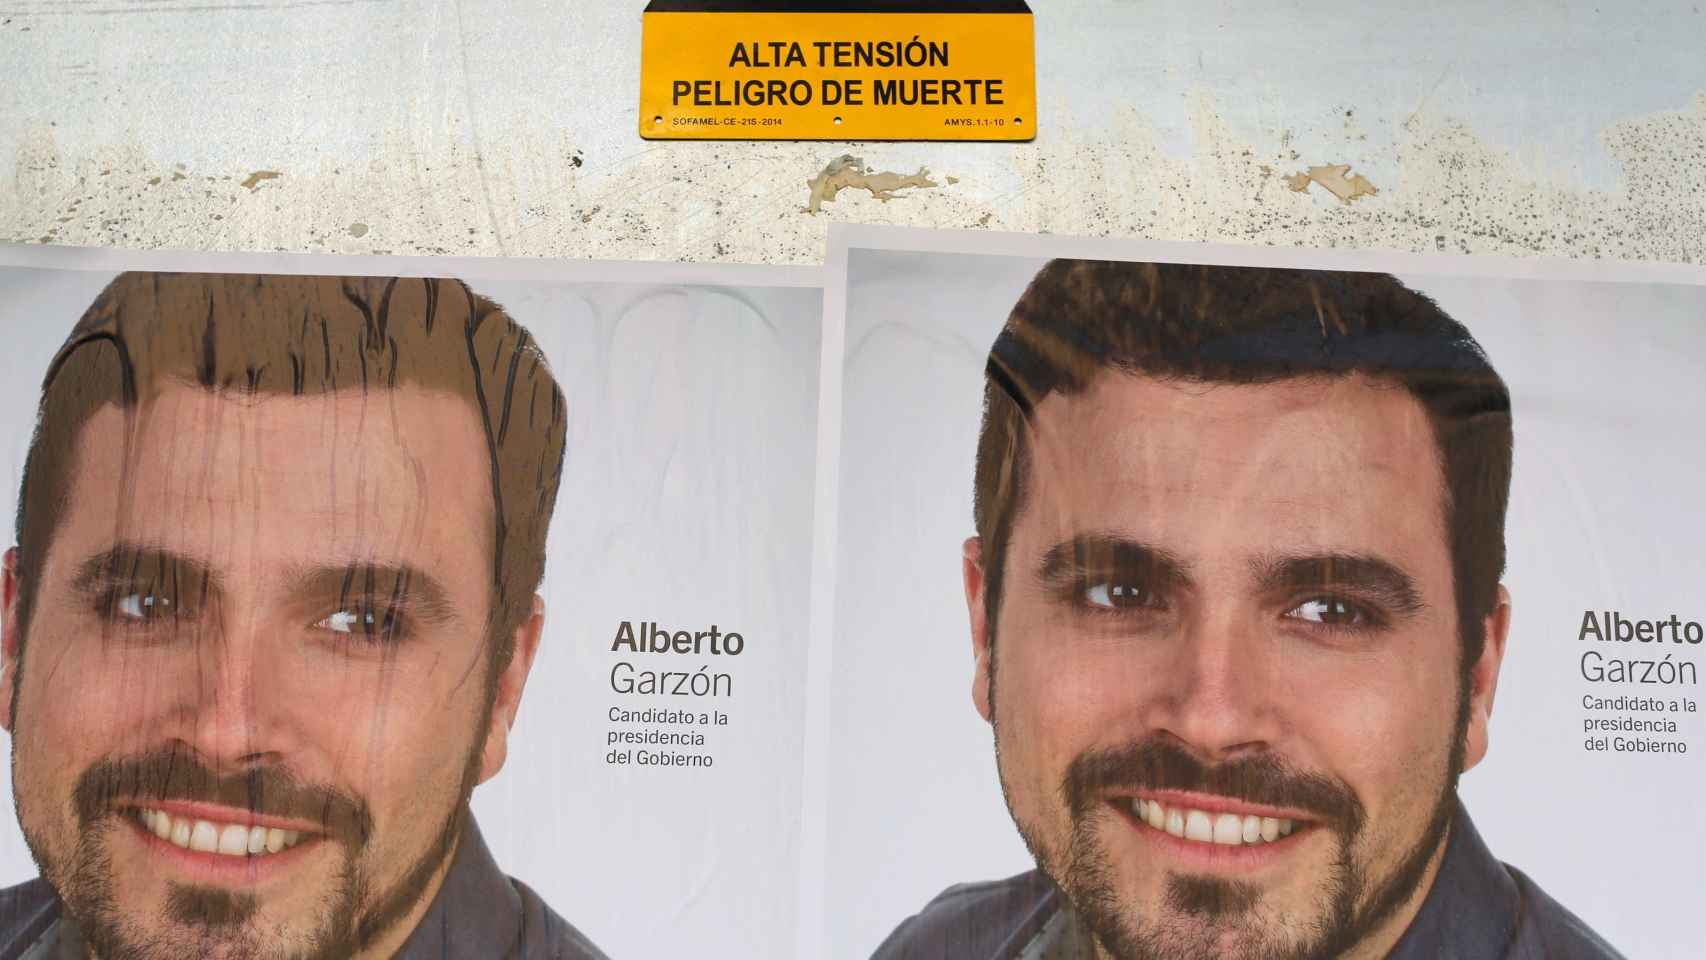 Los carteles de Alberto Garzón junto a una señal premonitoria.